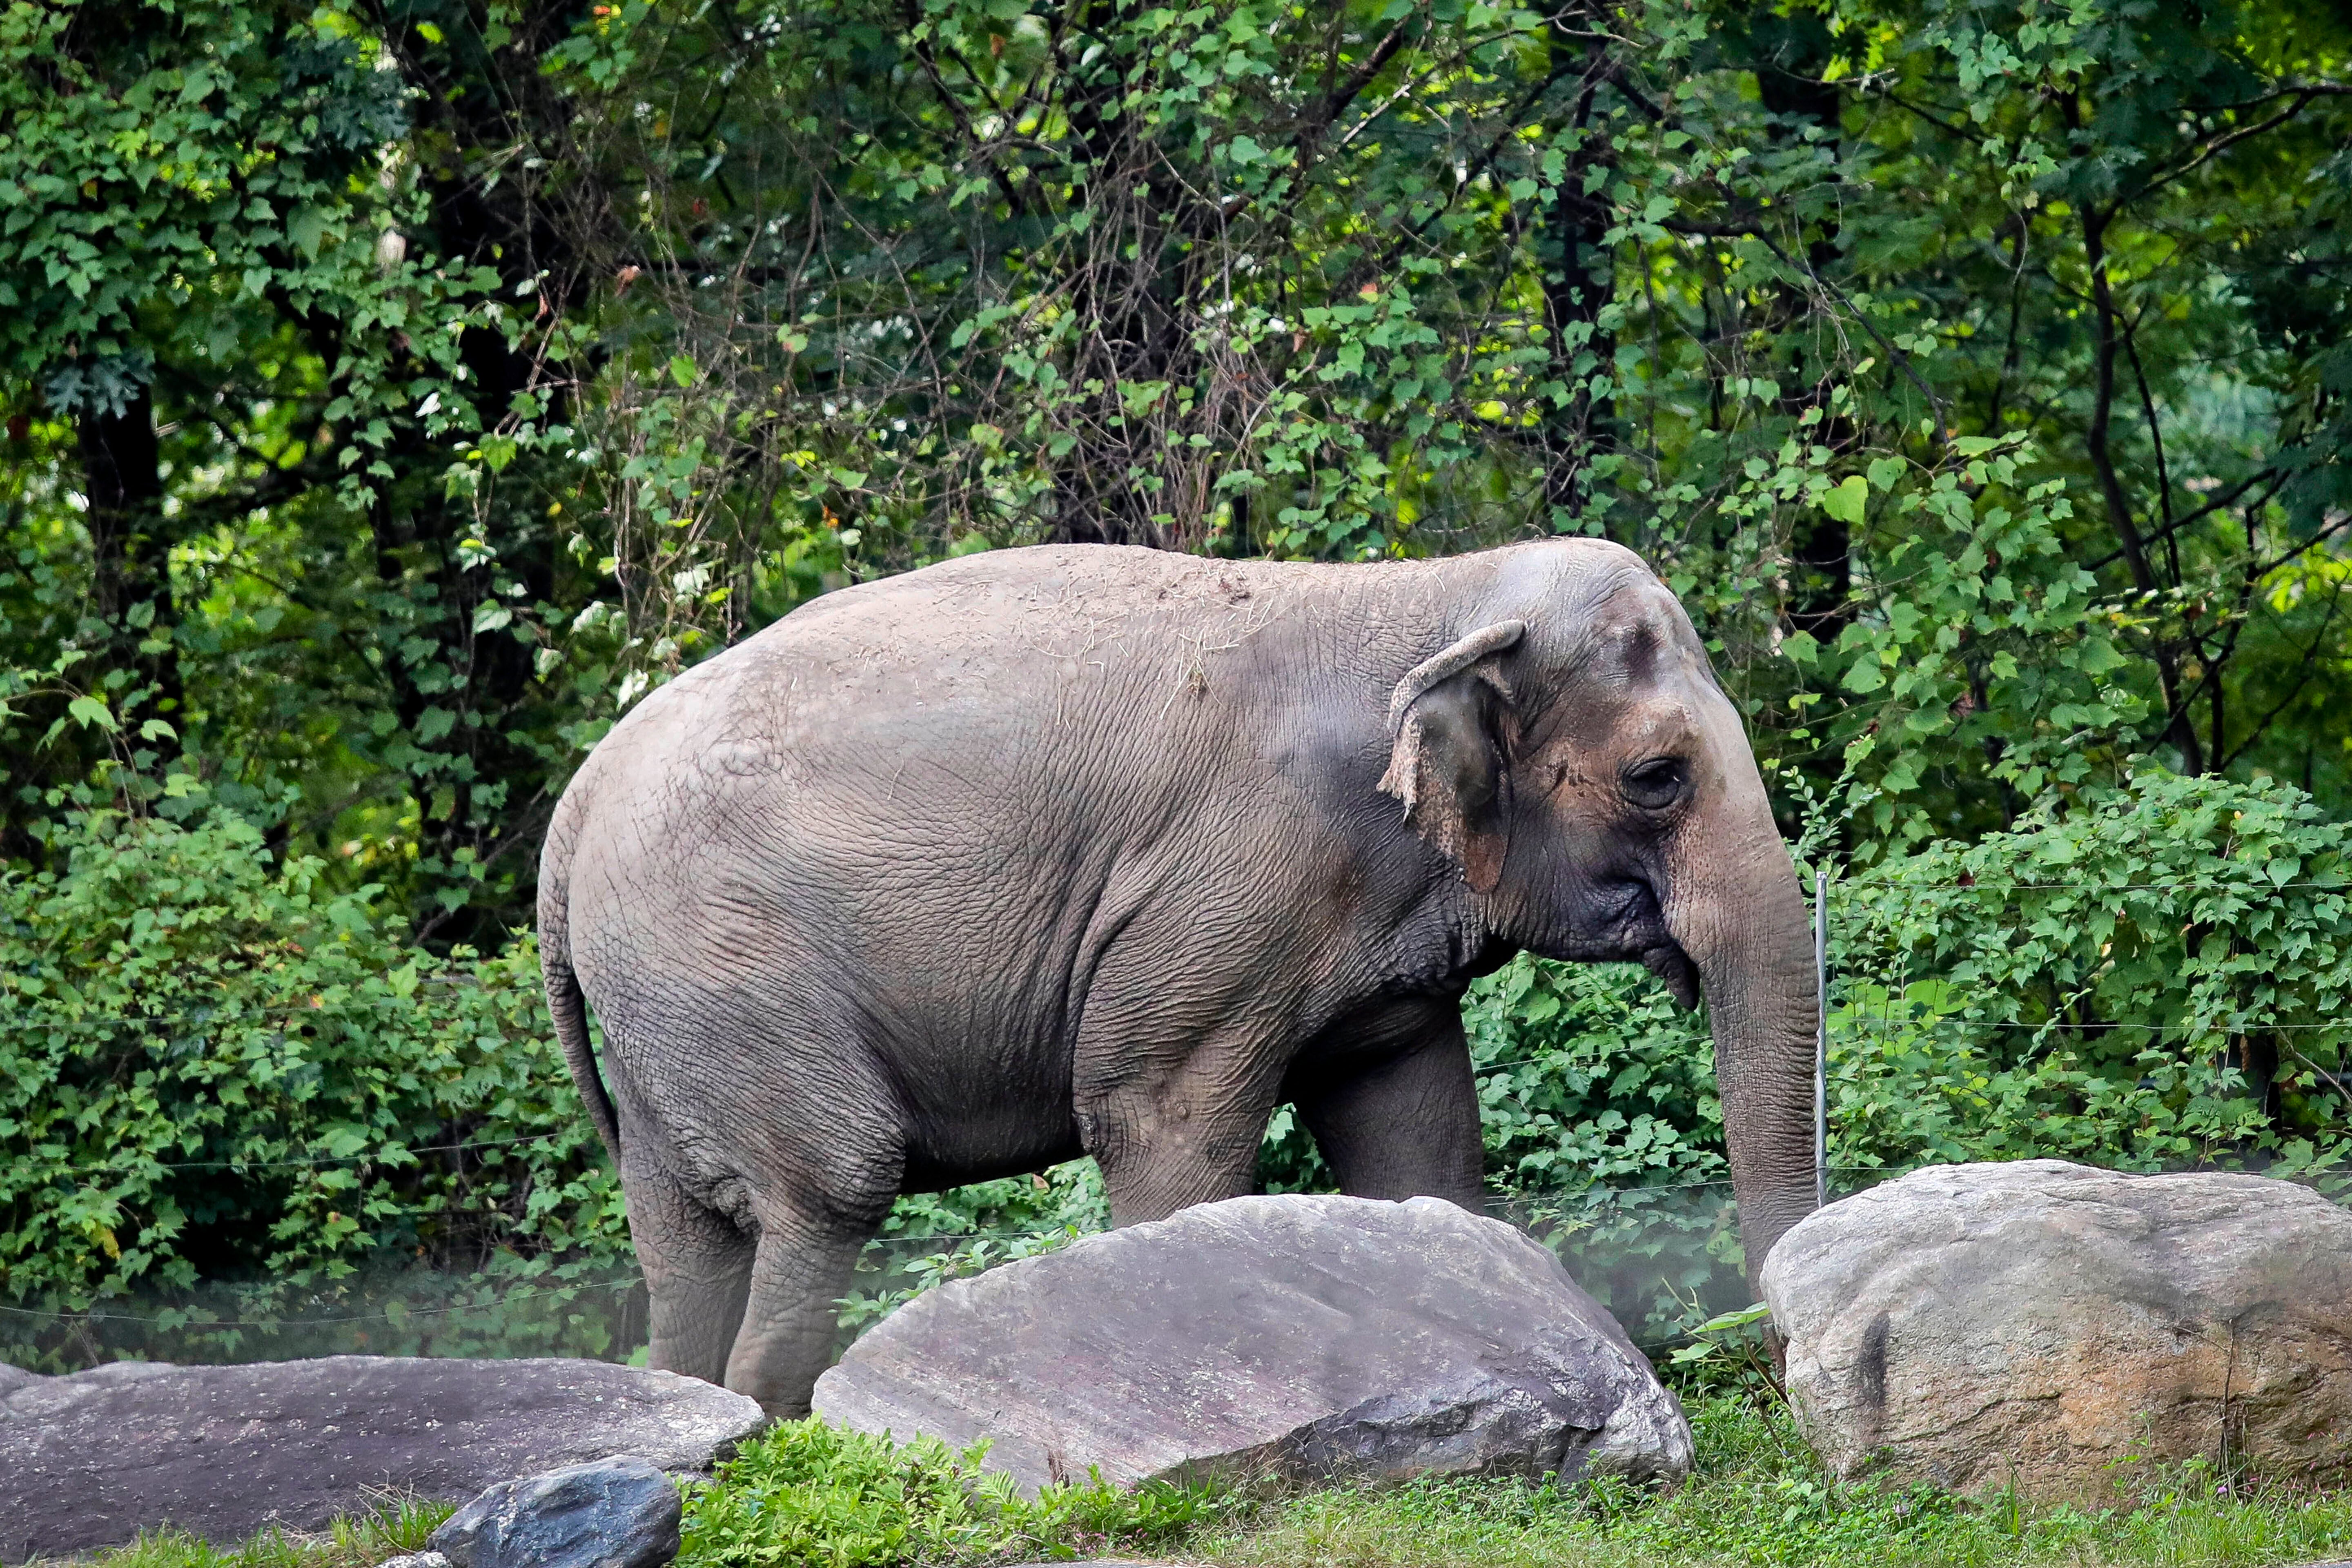 ARCHIVO - La elefanta del zoológico del Bronx, “Happy”, pasea dentro del Hábitat de Asia del zoológico en Nueva York el 2 de octubre de 2018